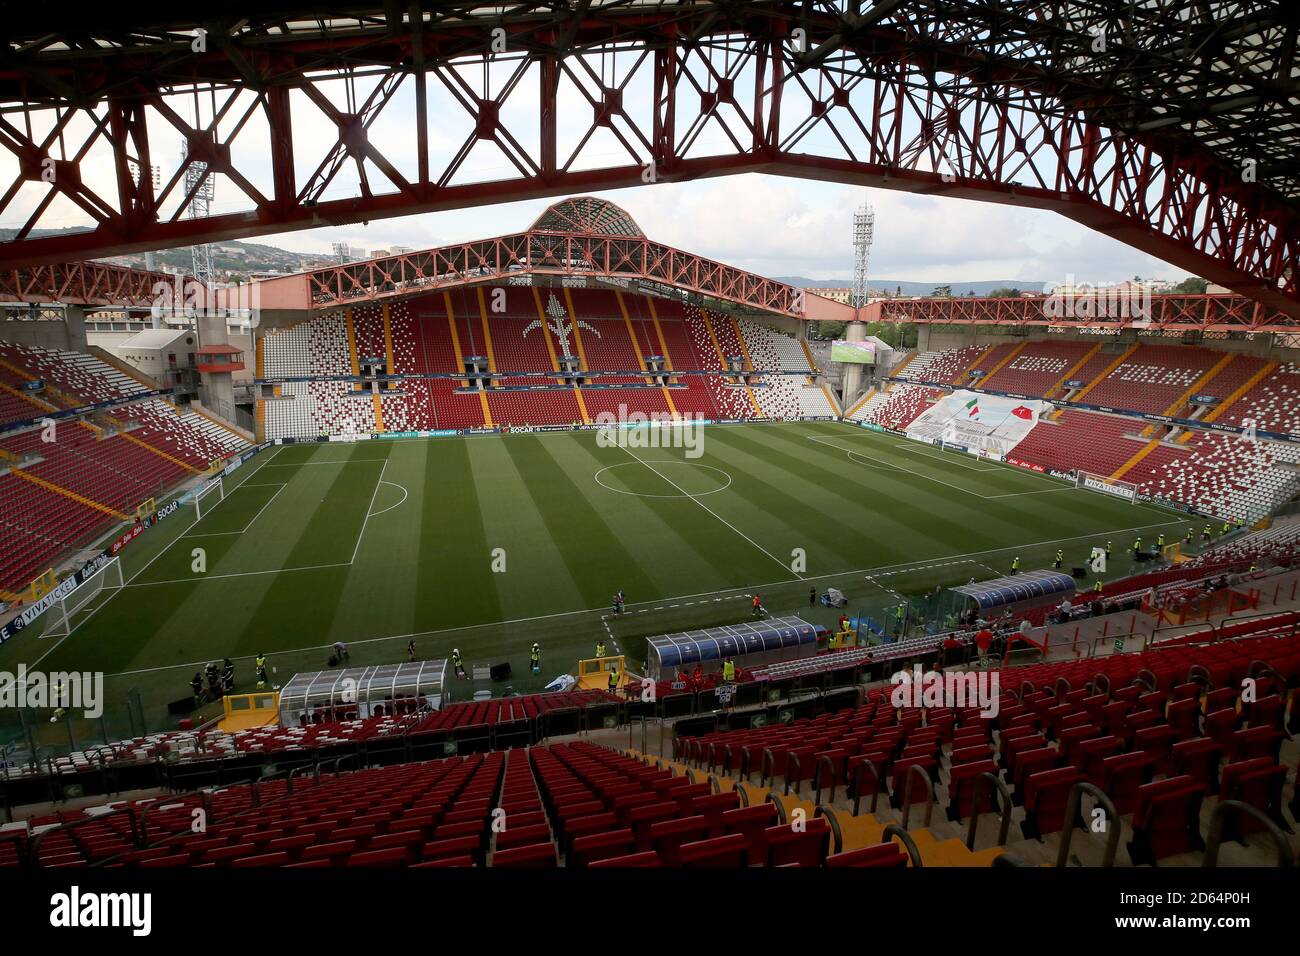 Vista dello stadio Nereo Rocco prima del gamev Foto stock - Alamy